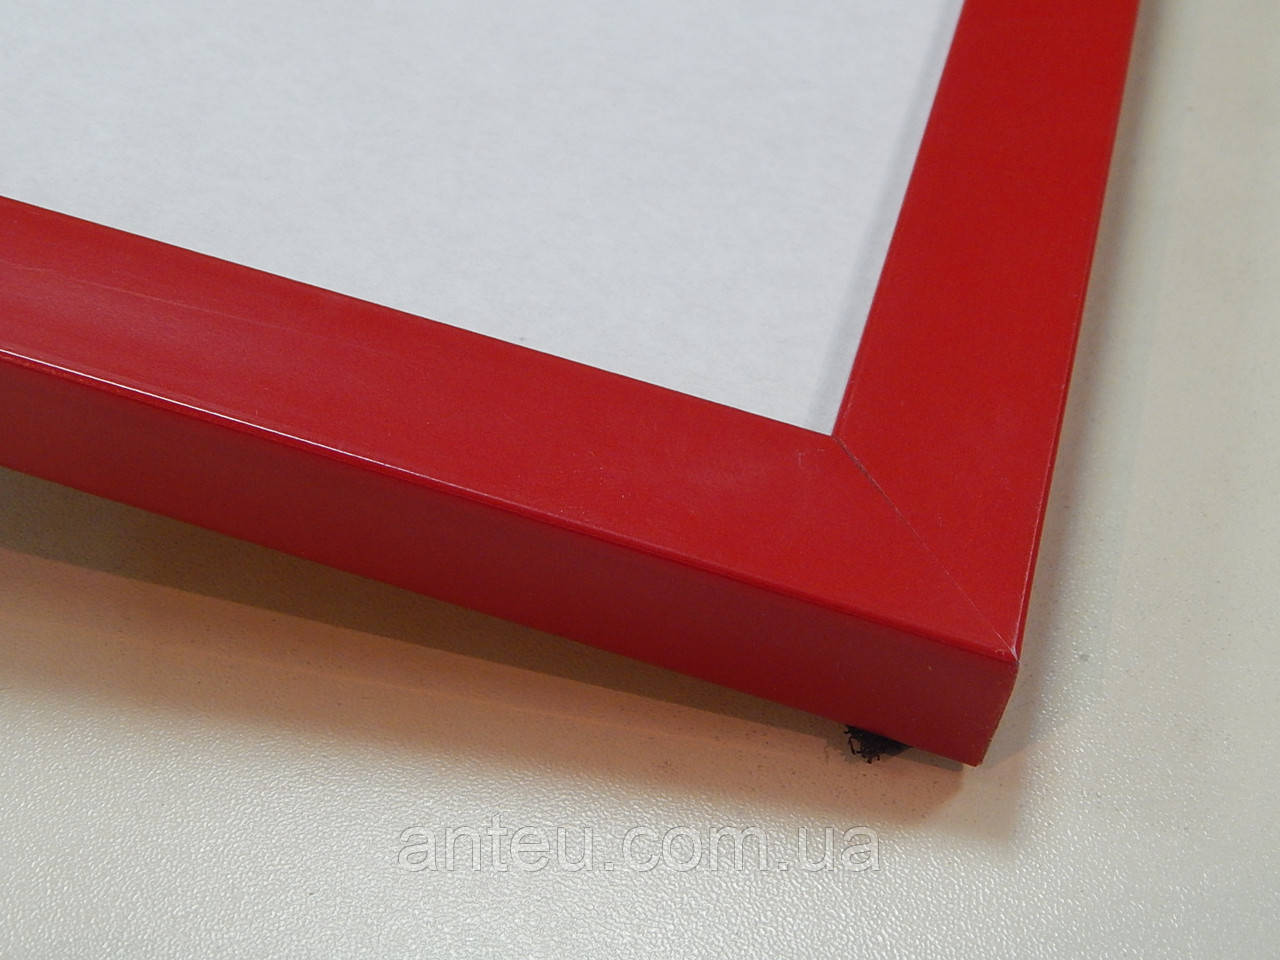 Рамка А2(420х594) Червоний. Профіль 22 мм. Для картин,плакатів,фото